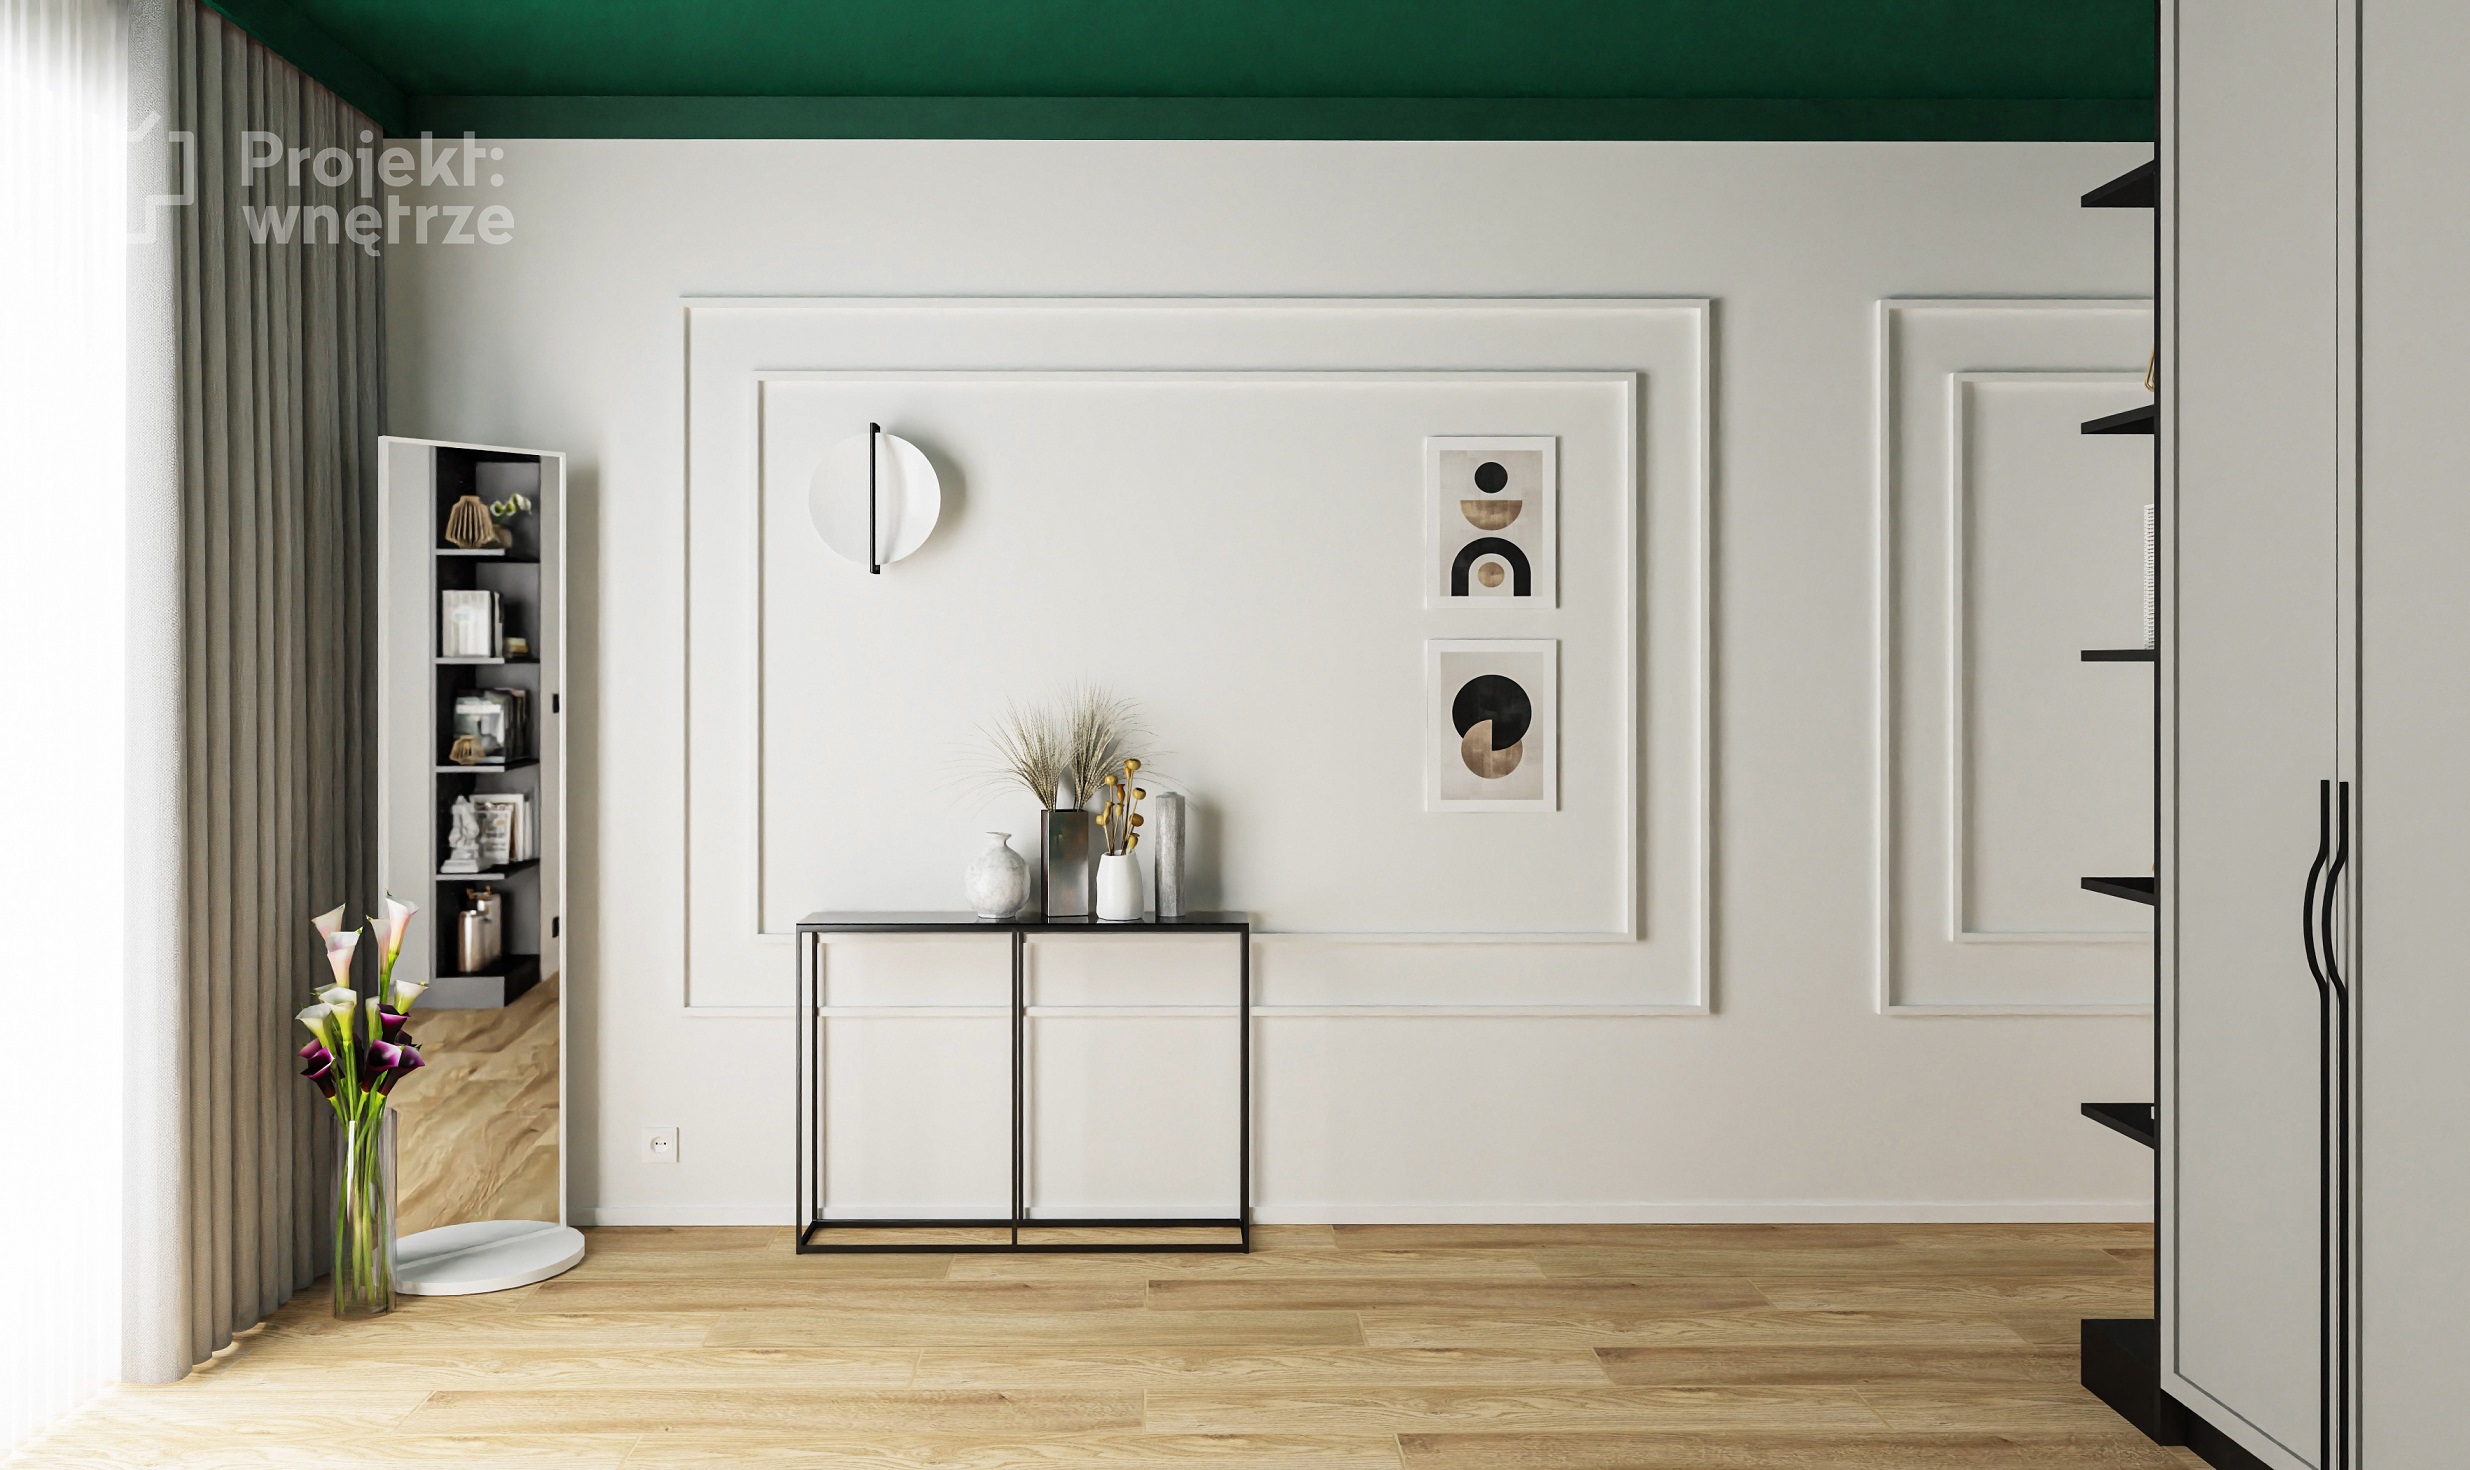 Projekt wnętrze projekt sypialni zieleń szarość drewno czerń tapeta sztukateria toaletka Ikea Zfabryki - projektowanie wnętrz online Warszawa (4)